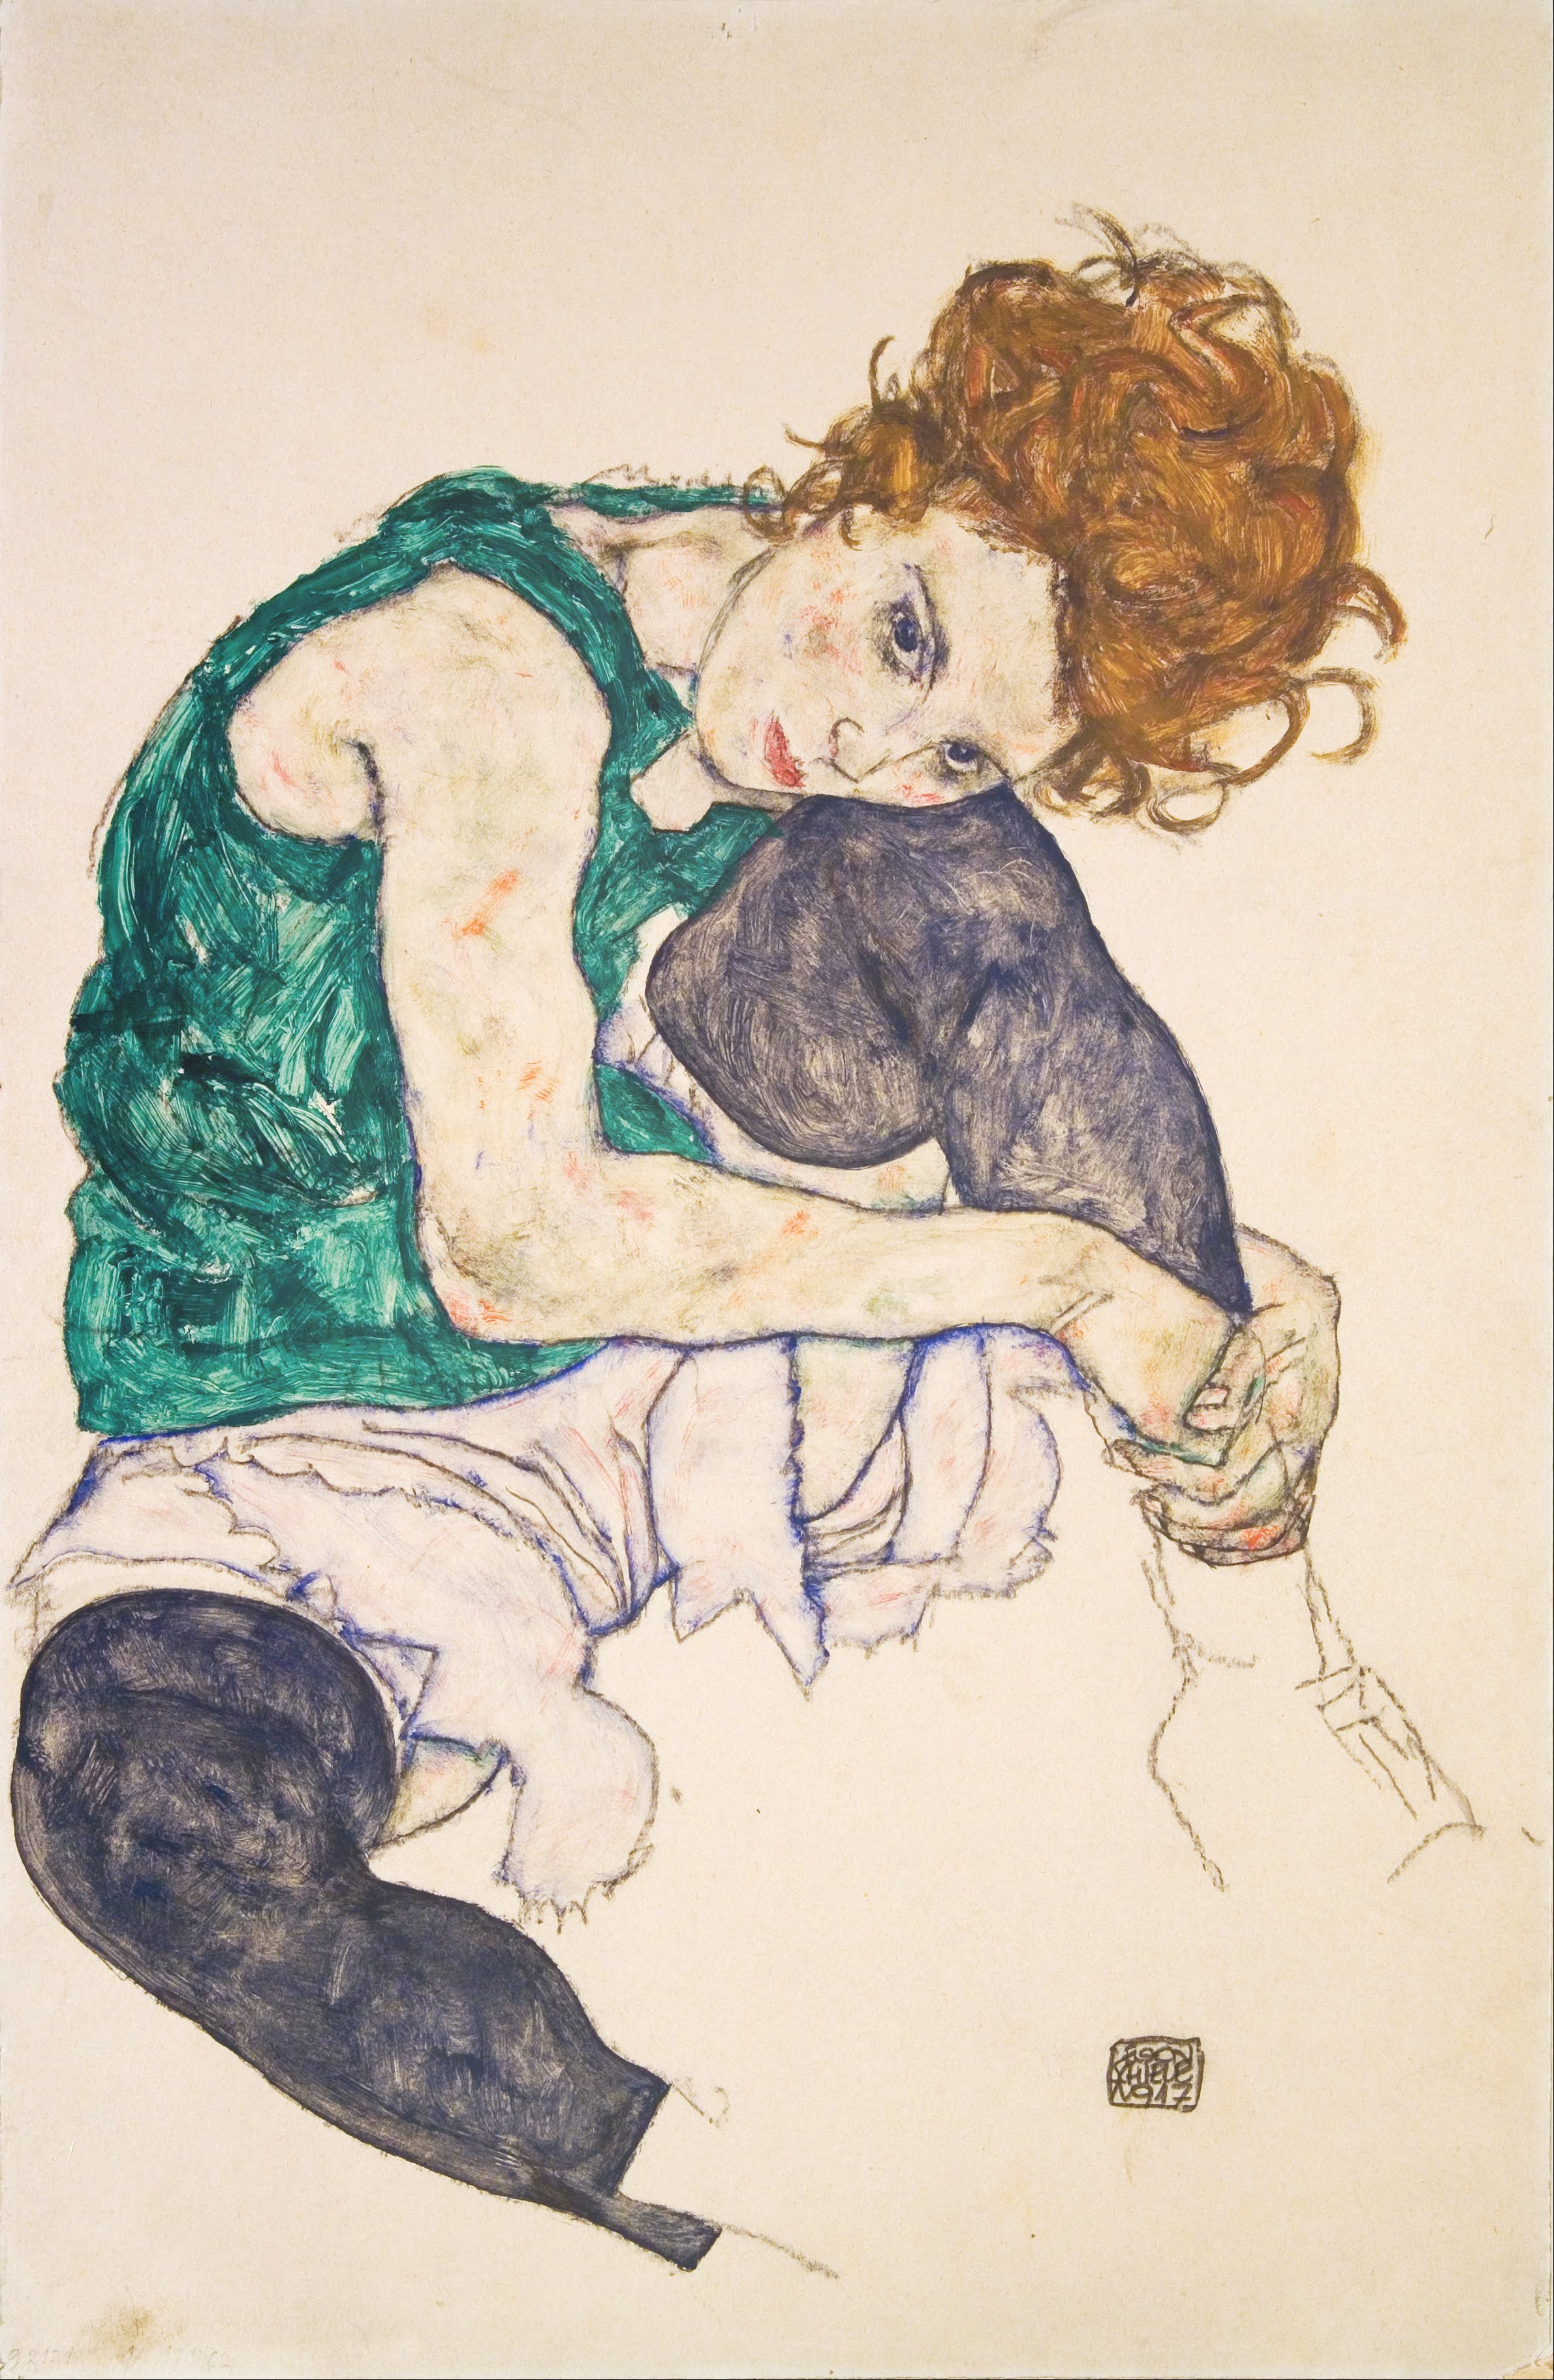 左ひざを折って座っている女性 by Egon Schiele - 1917年 - 46 x 30.5 cm 